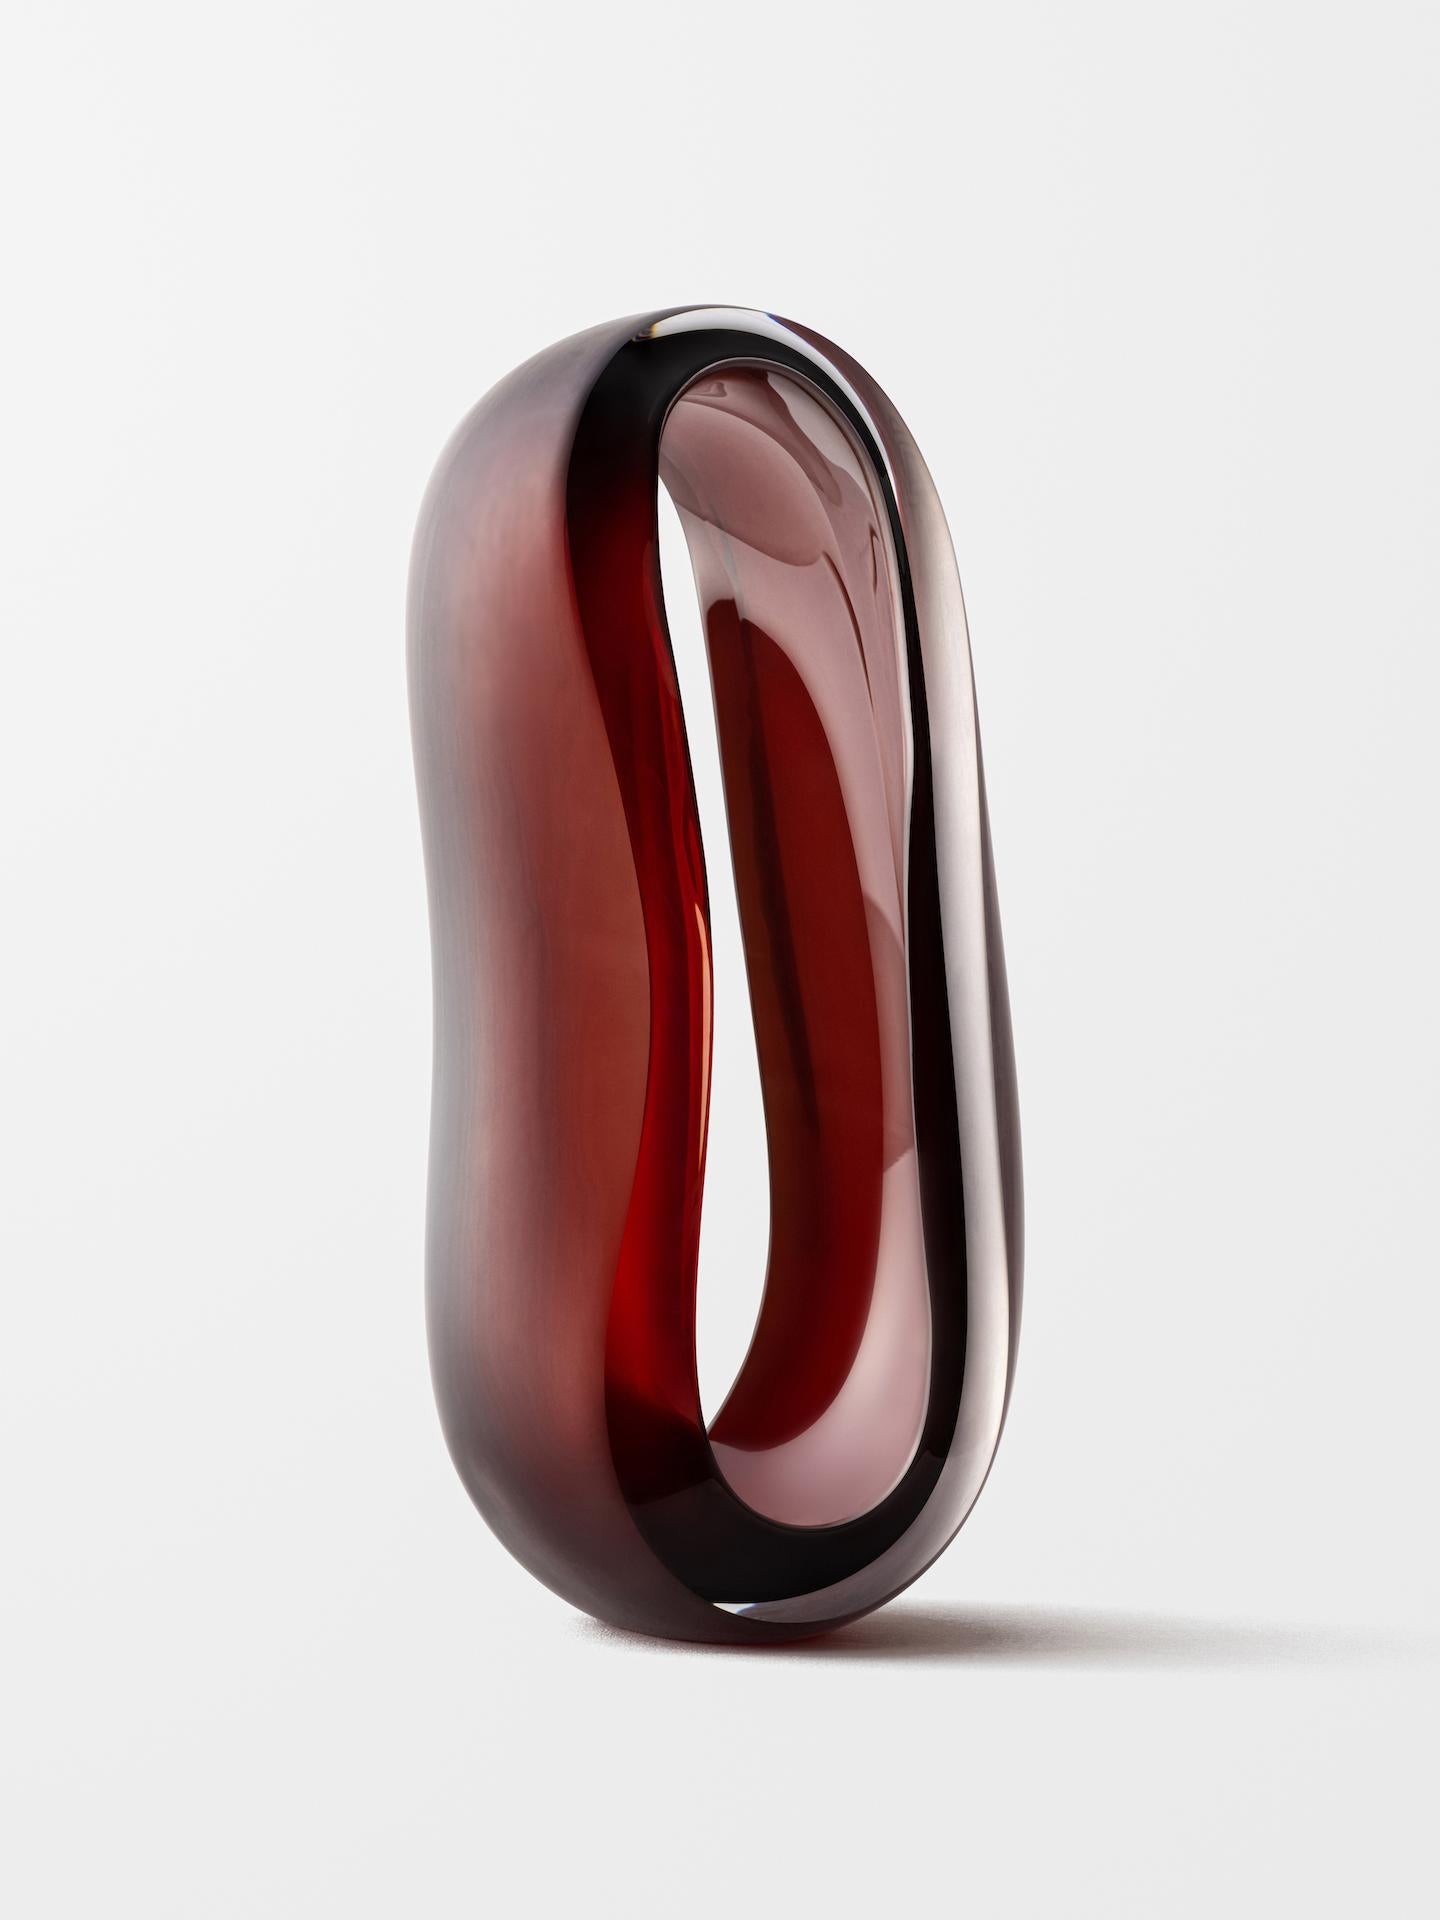 Loops (Amber) - Sculpture by Jonas Noël Niedermann